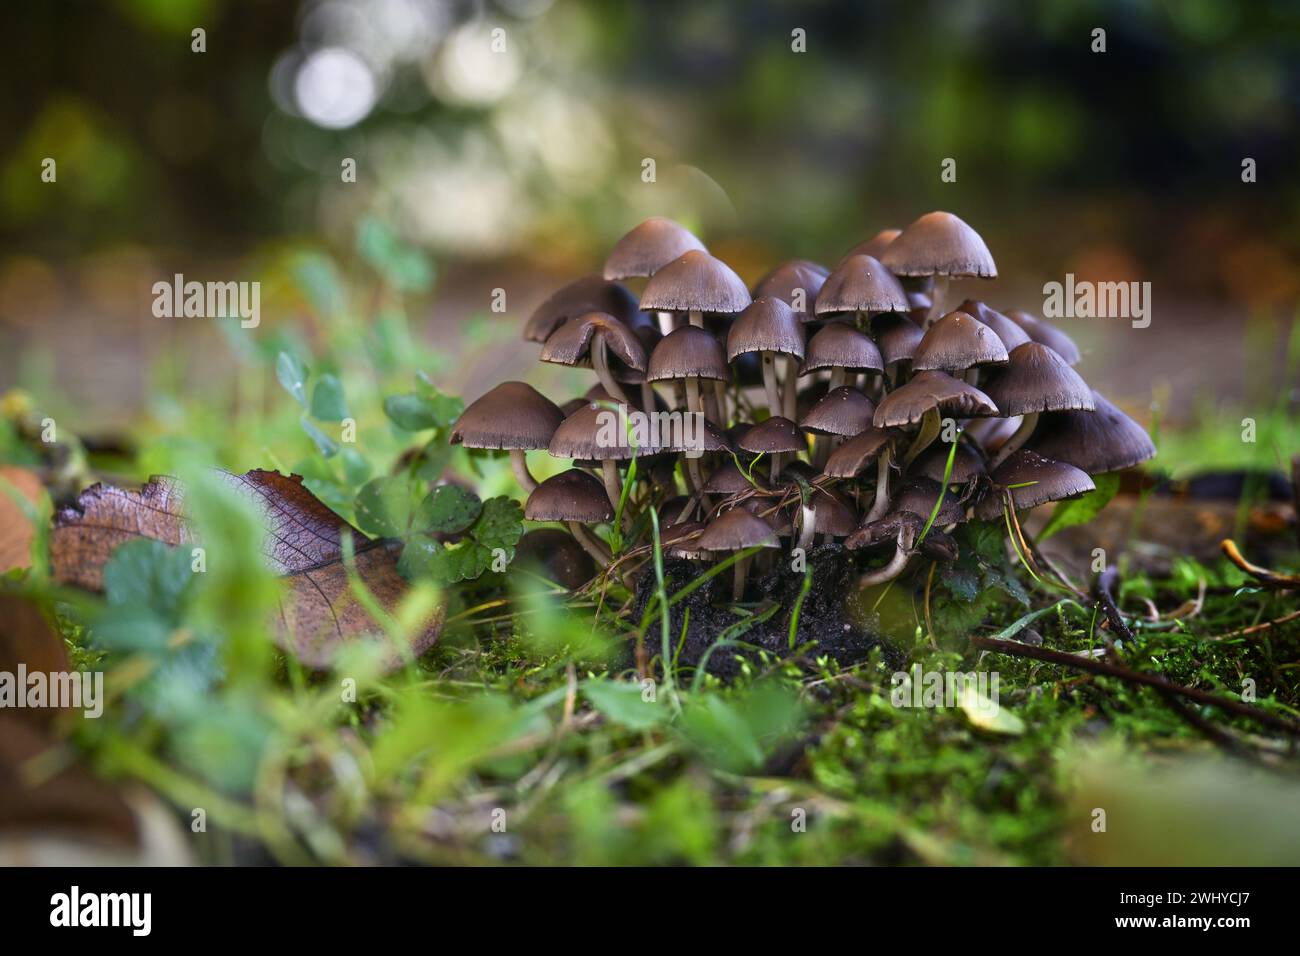 Groupe de champignons (probablement Psathyrella pygmaea) avec des chapeaux bruns et des tiges creuses blanches minces dans la mousse sous les arbres dans une décédente Banque D'Images